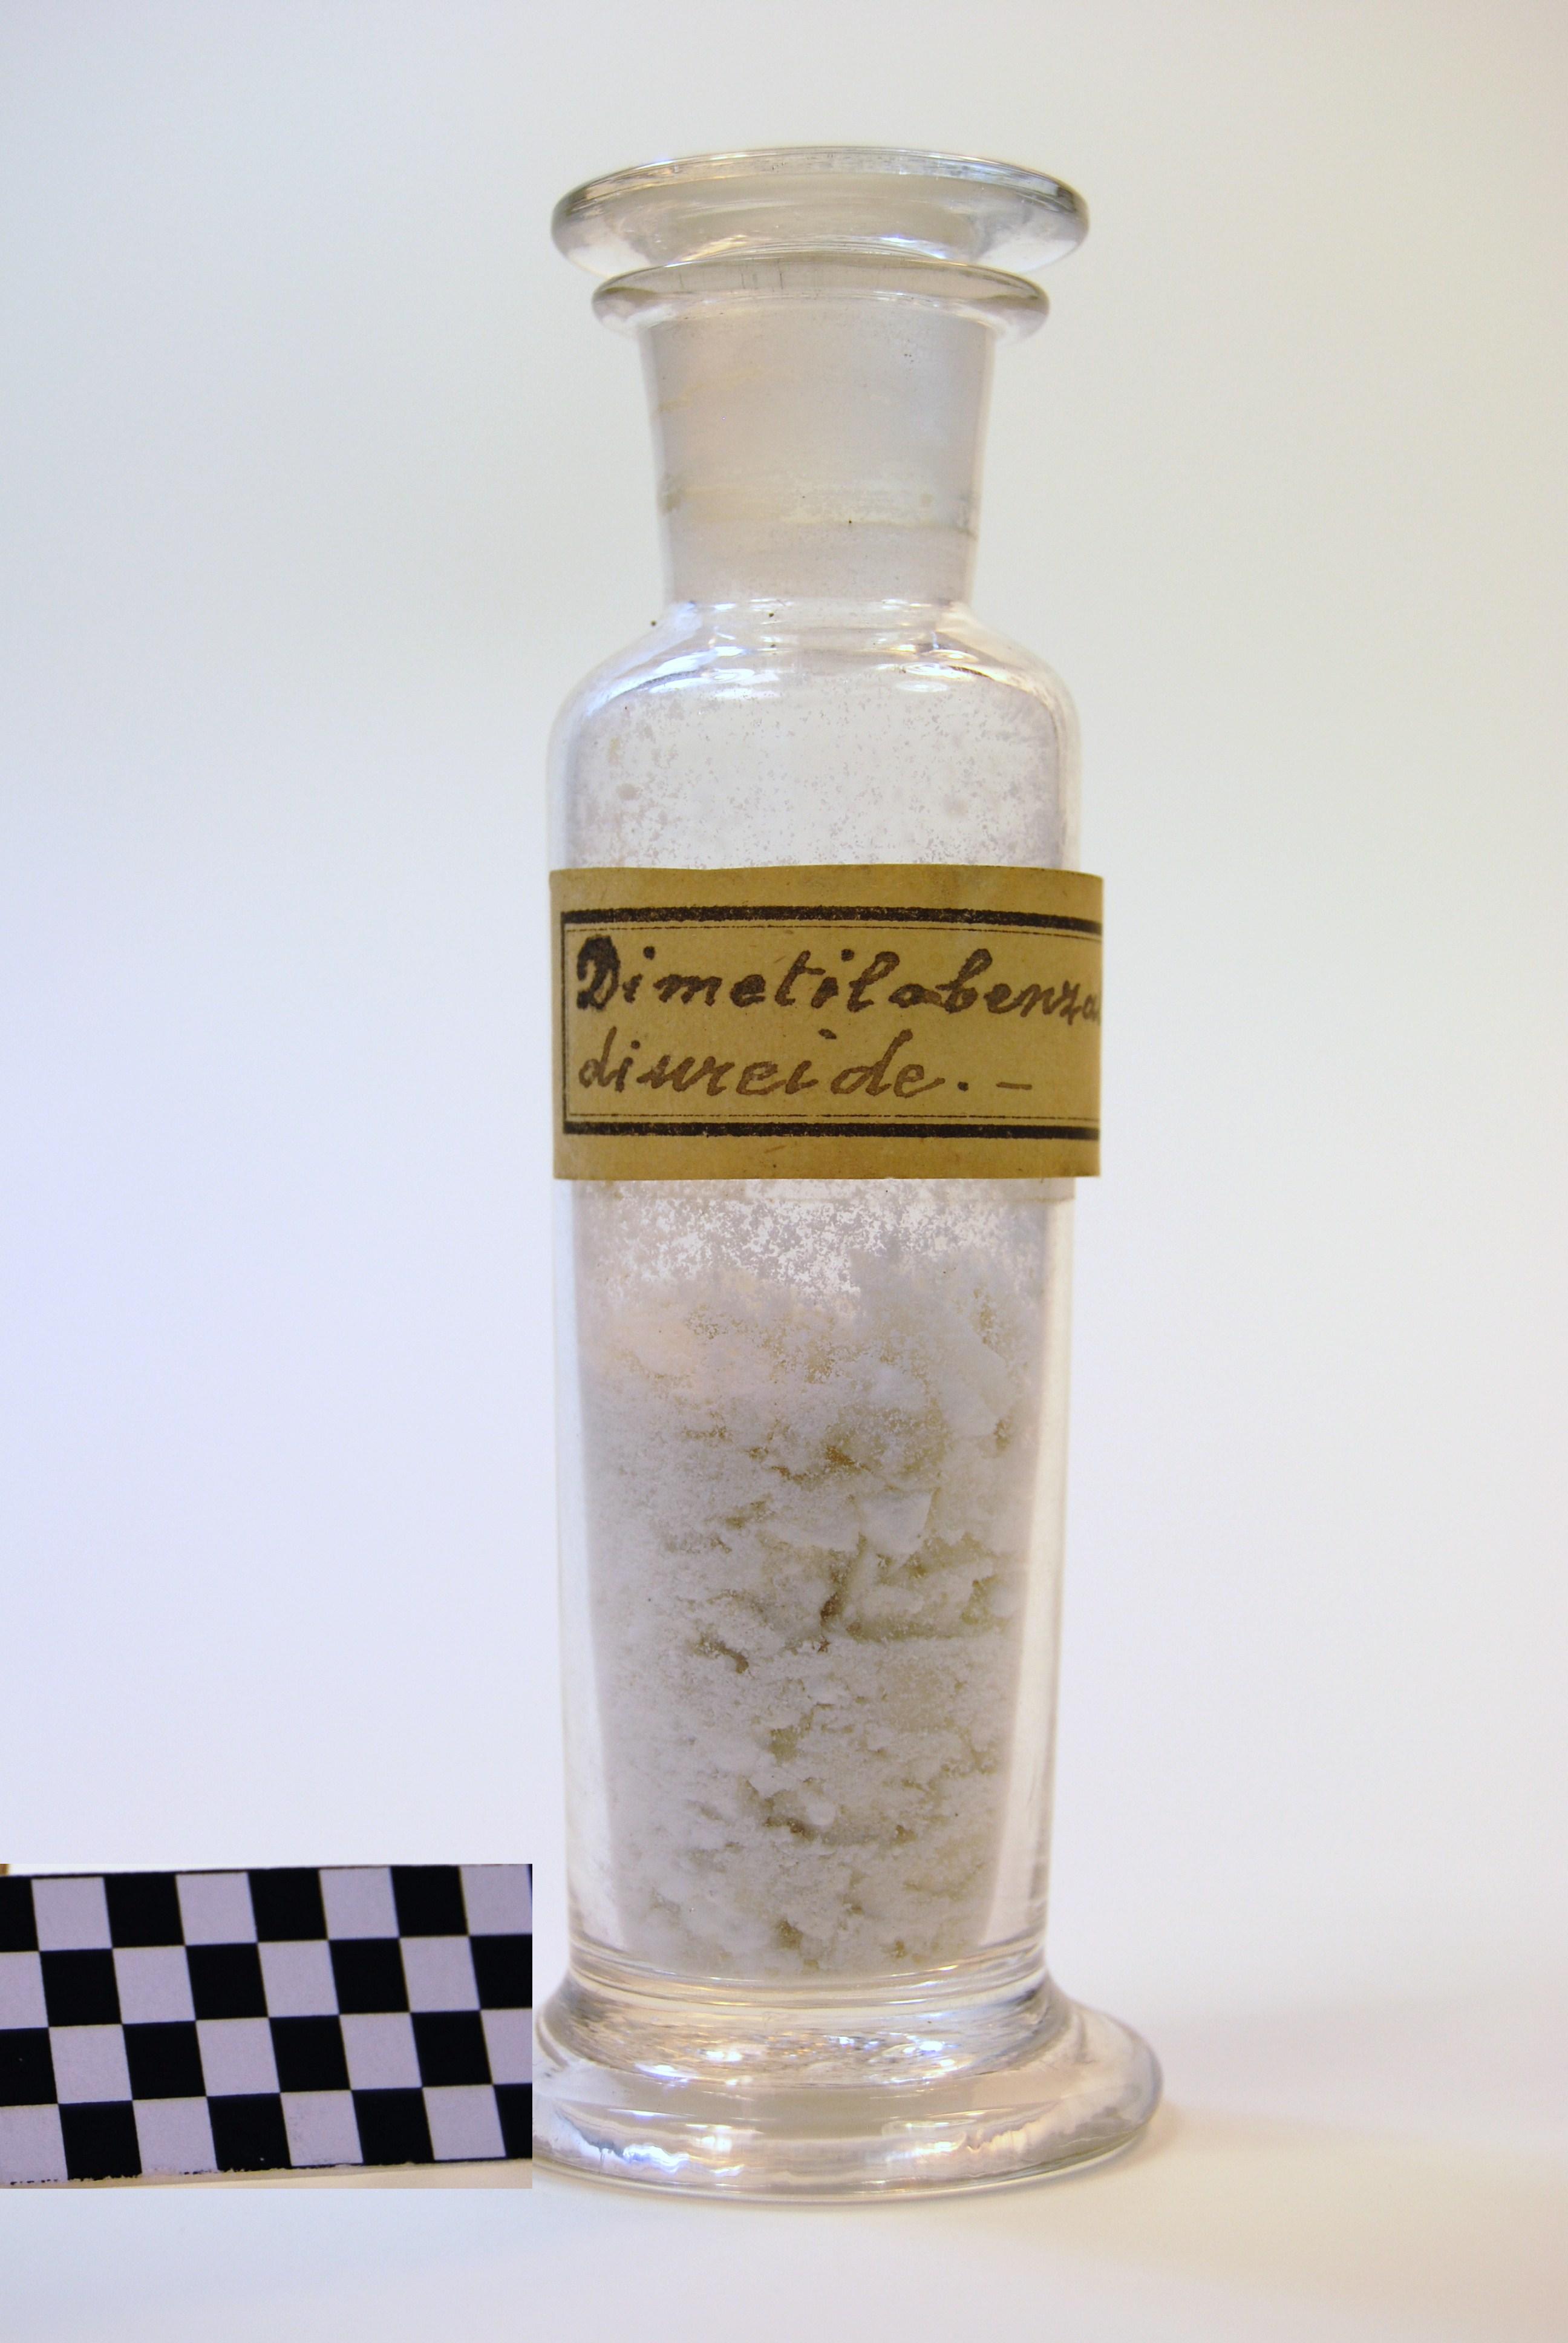 dimetilobenzaldiureide (prodotto chimico, di sintesi) di Ugo Schiff (laboratorio) - scuola chimica fiorentina (metà/ inizio XIX/ XX)